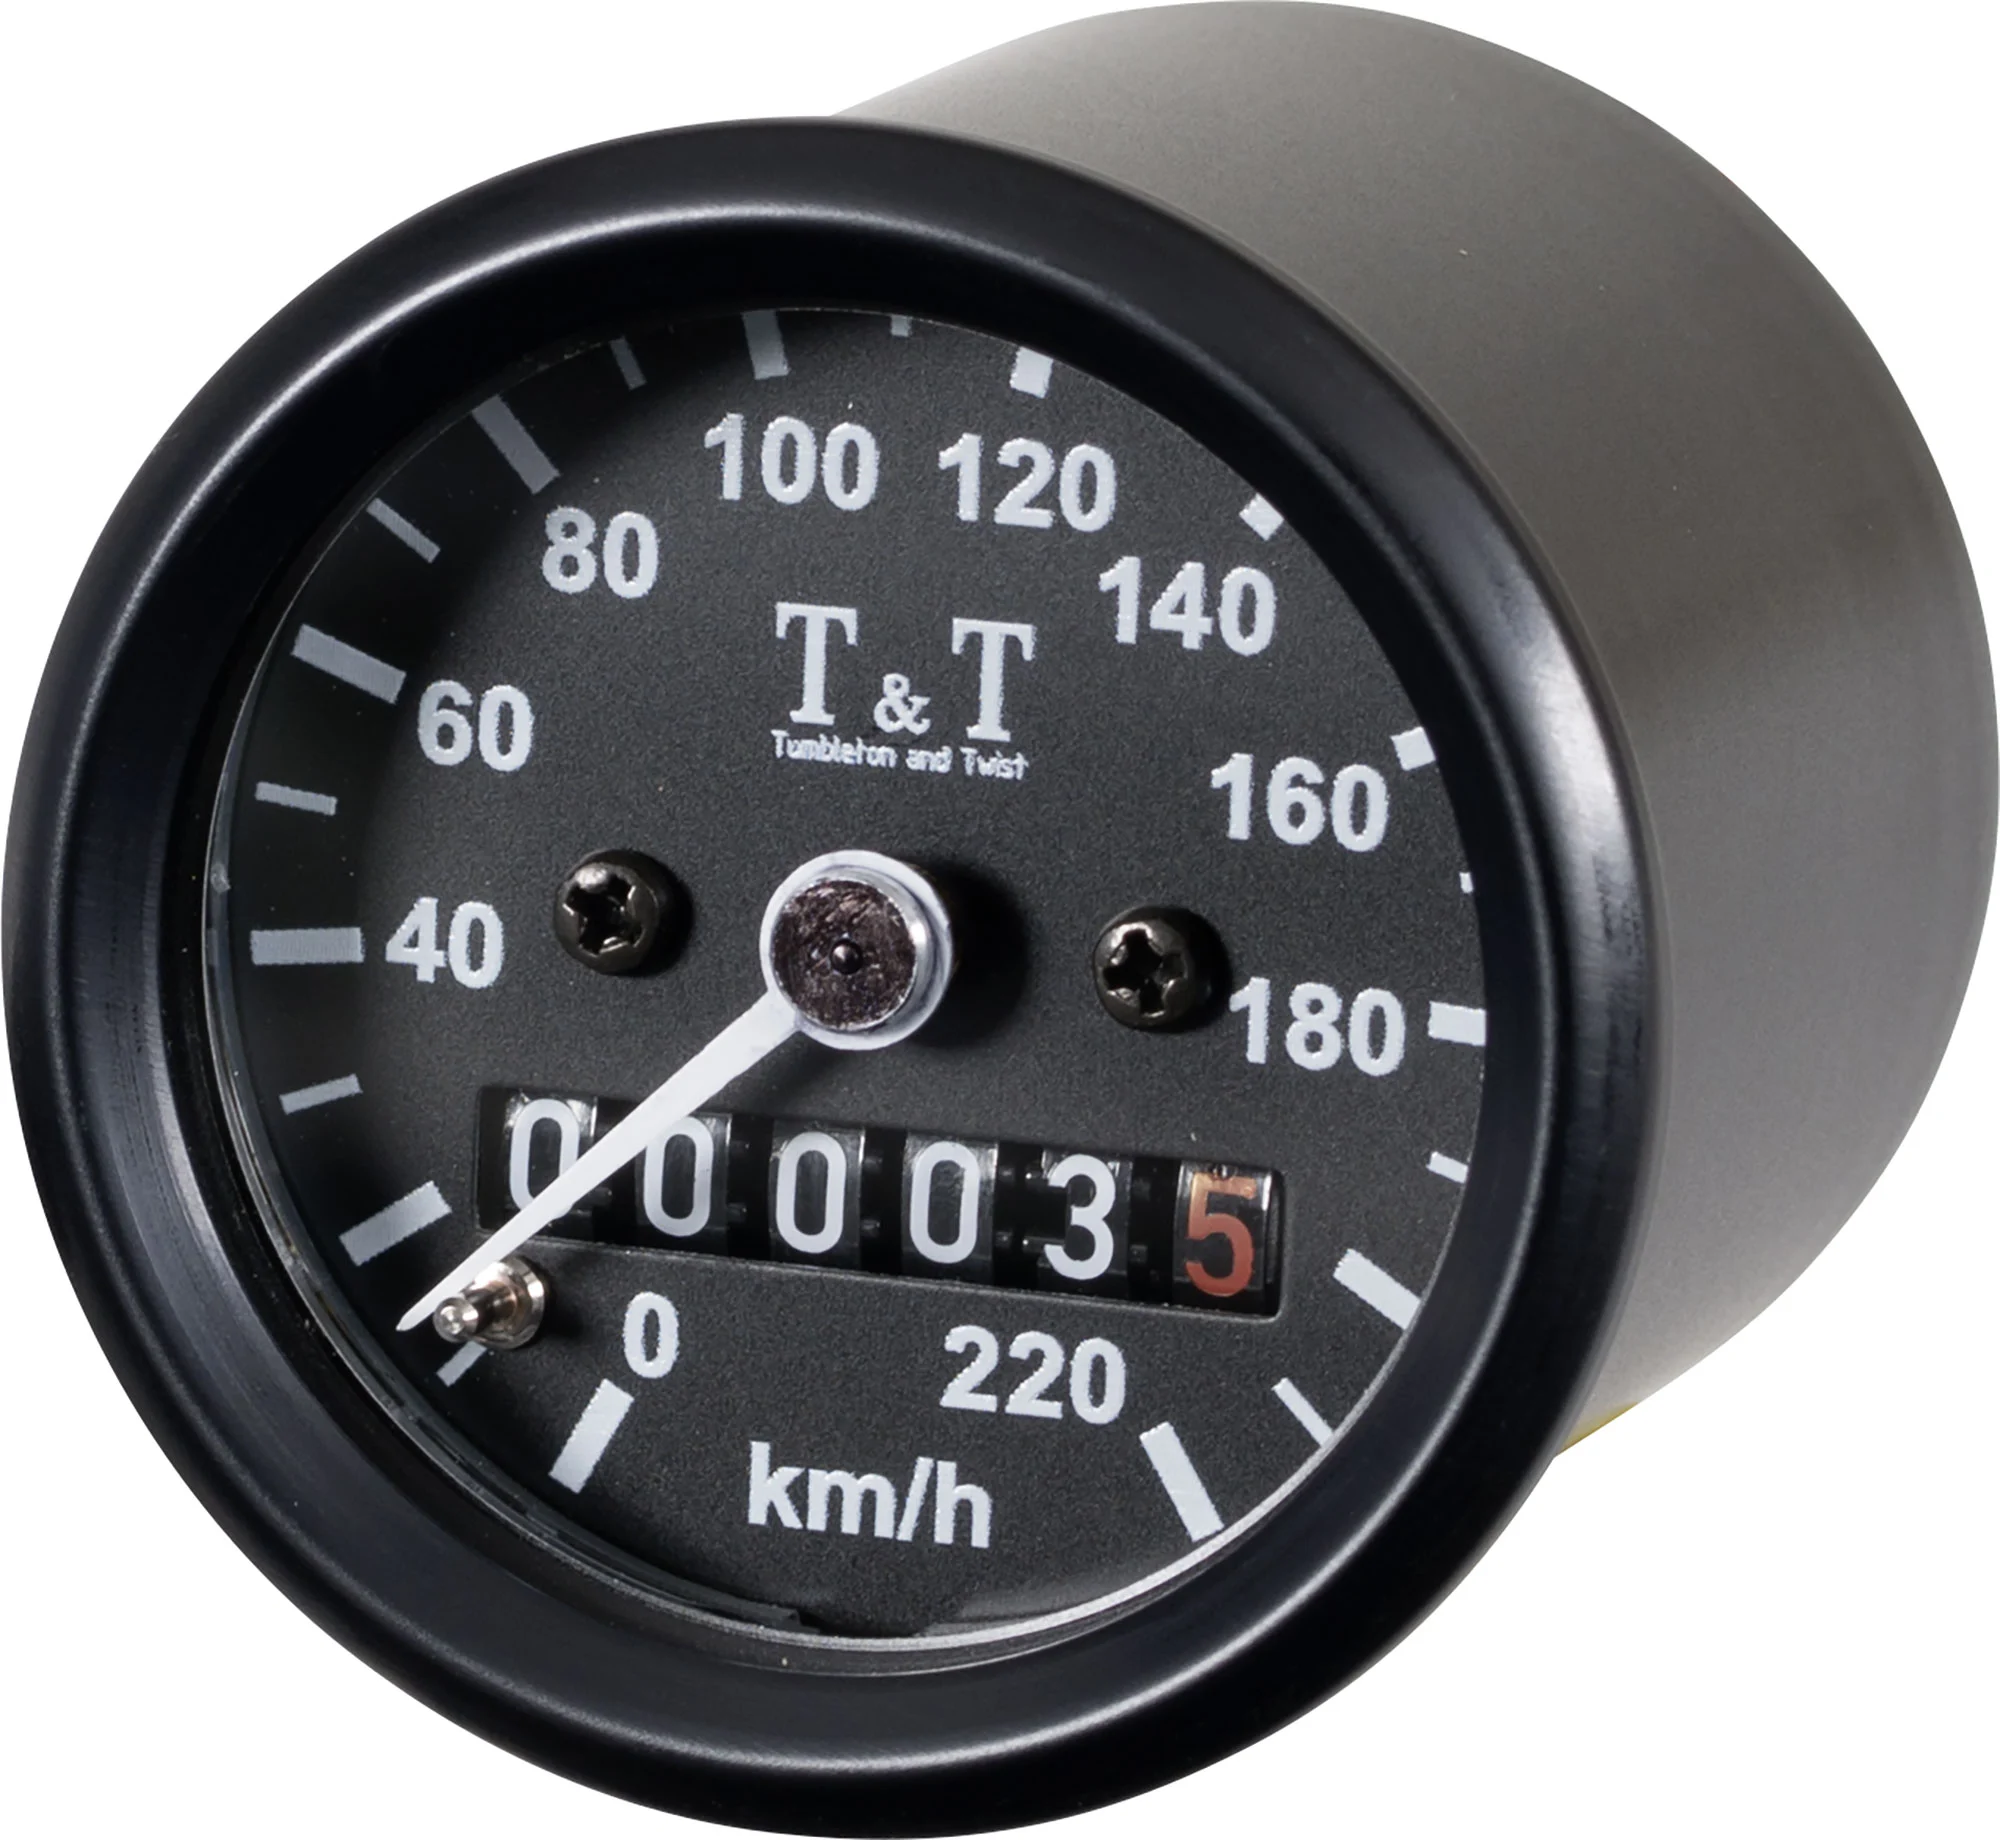 Tumbleton and Twist T&T mechanischer Tachometer -220 KM/H, k-Wert 1,4, M12